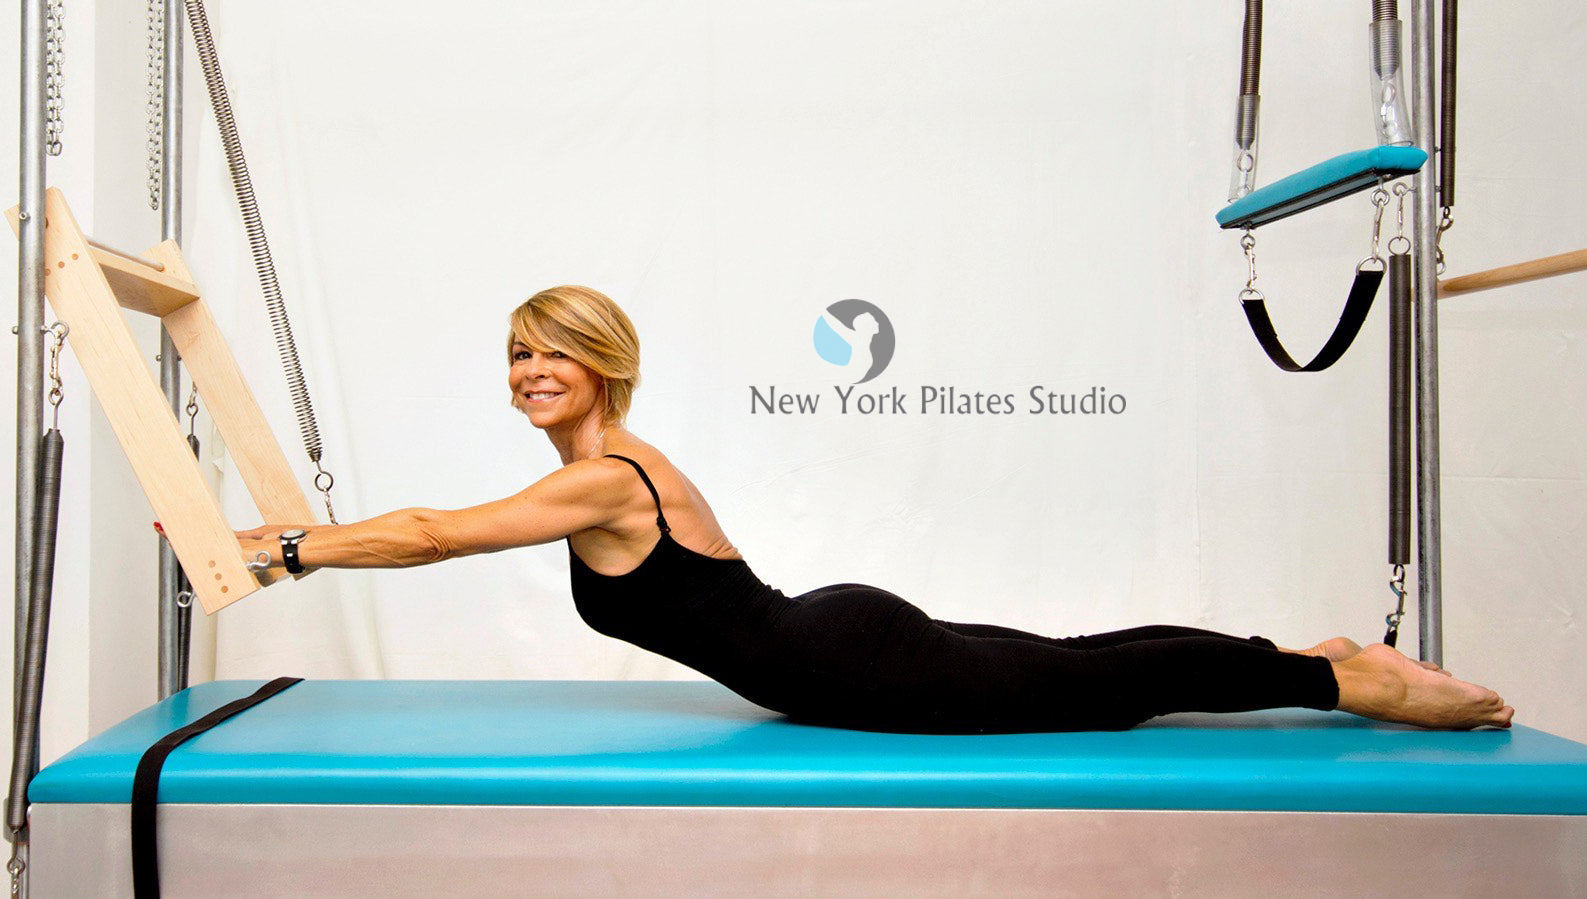 New York Pilates Studio Banner 4